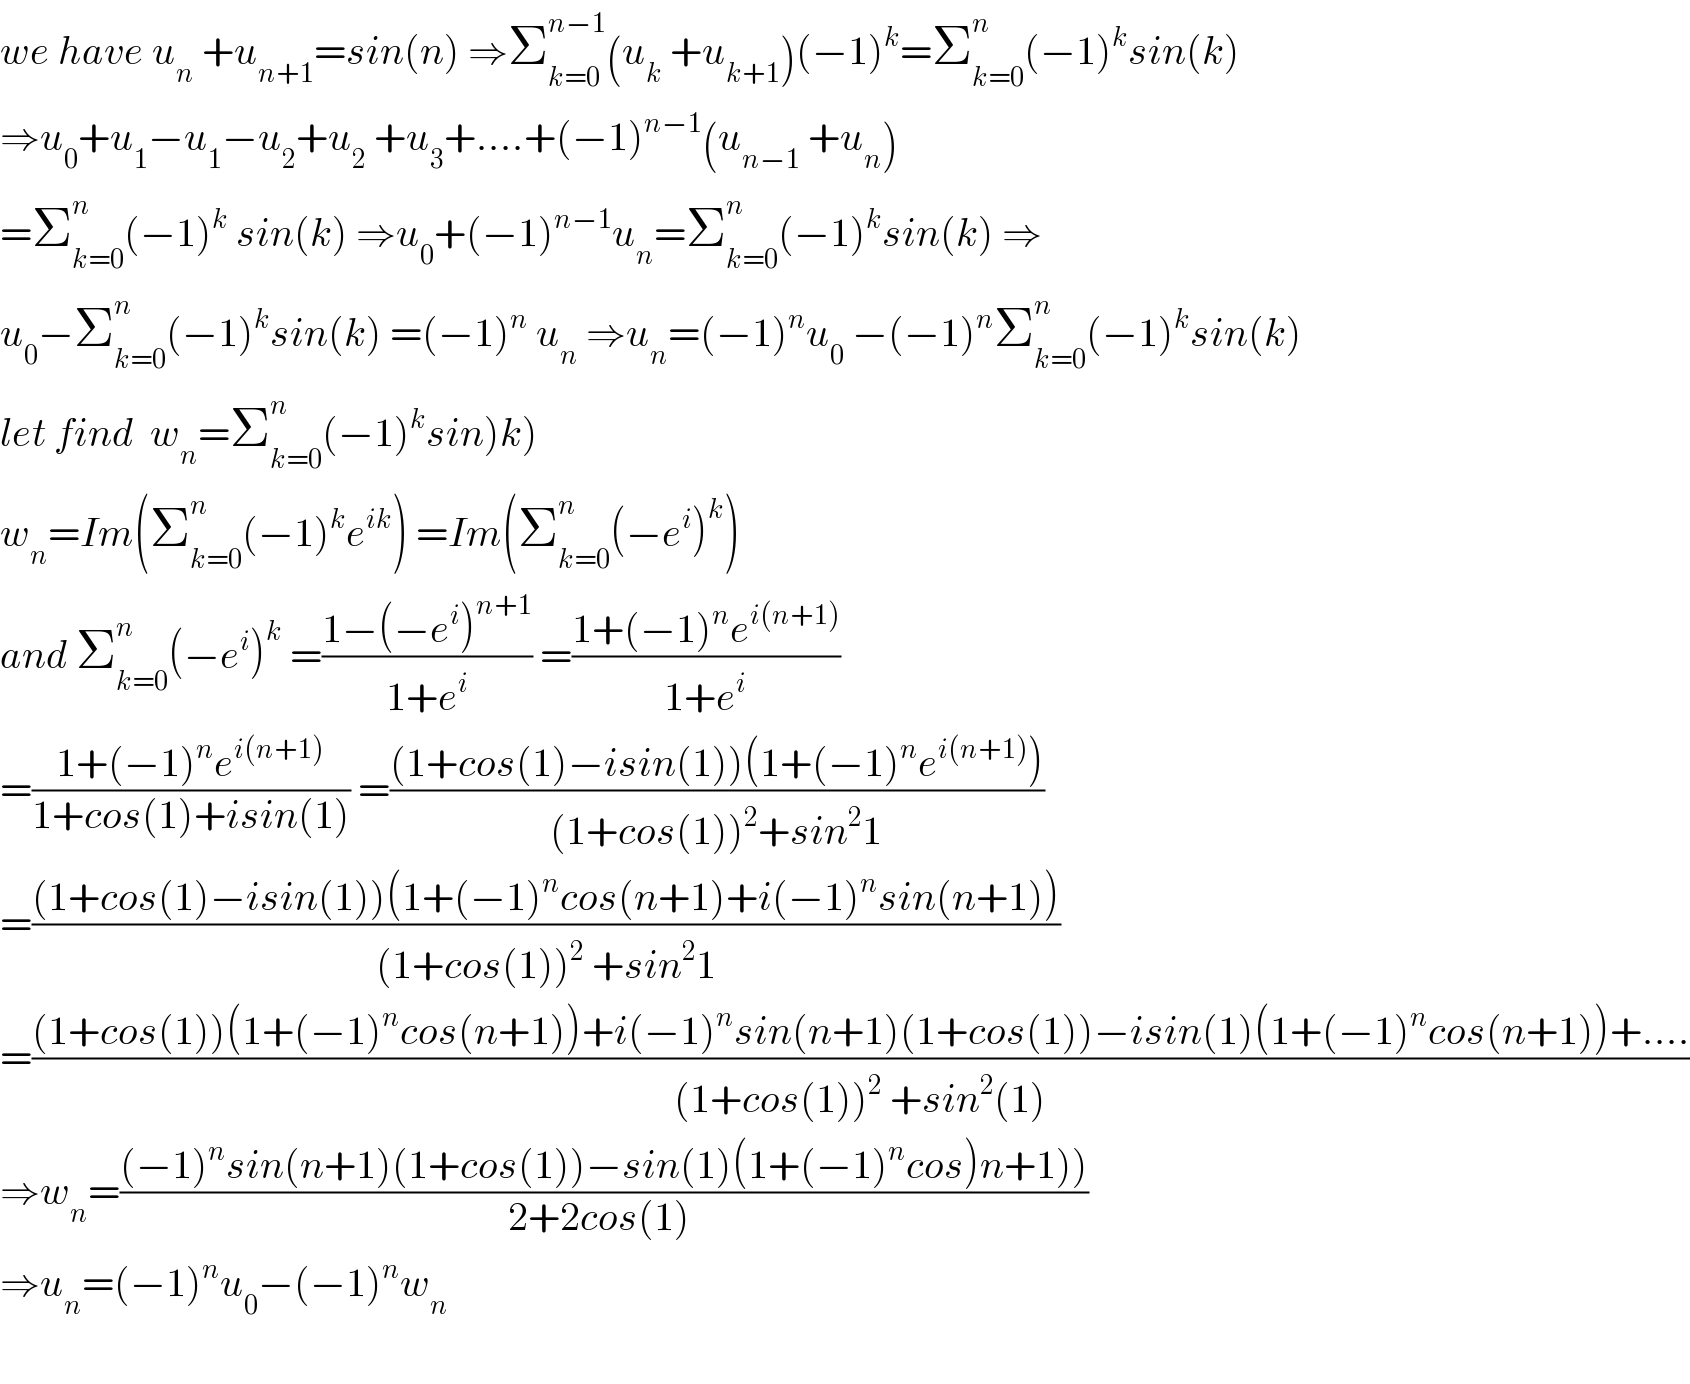 we have u_n  +u_(n+1) =sin(n) ⇒Σ_(k=0) ^(n−1) (u_k  +u_(k+1) )(−1)^k =Σ_(k=0) ^n (−1)^k sin(k)  ⇒u_0 +u_1 −u_1 −u_2 +u_2  +u_3 +....+(−1)^(n−1) (u_(n−1)  +u_n )  =Σ_(k=0) ^n (−1)^k  sin(k) ⇒u_0 +(−1)^(n−1) u_n =Σ_(k=0) ^n (−1)^k sin(k) ⇒  u_0 −Σ_(k=0) ^n (−1)^k sin(k) =(−1)^n  u_n  ⇒u_n =(−1)^n u_0  −(−1)^n Σ_(k=0) ^n (−1)^k sin(k)  let find  w_n =Σ_(k=0) ^n (−1)^k sin)k)  w_n =Im(Σ_(k=0) ^n (−1)^k e^(ik) ) =Im(Σ_(k=0) ^n (−e^i )^k )  and Σ_(k=0) ^n (−e^i )^k  =((1−(−e^i )^(n+1) )/(1+e^i )) =((1+(−1)^n e^(i(n+1)) )/(1+e^i ))  =((1+(−1)^n e^(i(n+1)) )/(1+cos(1)+isin(1))) =(((1+cos(1)−isin(1))(1+(−1)^n e^(i(n+1)) ))/((1+cos(1))^2 +sin^2 1))  =(((1+cos(1)−isin(1))(1+(−1)^n cos(n+1)+i(−1)^n sin(n+1)))/((1+cos(1))^2  +sin^2 1))  =(((1+cos(1))(1+(−1)^n cos(n+1))+i(−1)^n sin(n+1)(1+cos(1))−isin(1)(1+(−1)^n cos(n+1))+....)/((1+cos(1))^2  +sin^2 (1)))  ⇒w_n =(((−1)^n sin(n+1)(1+cos(1))−sin(1)(1+(−1)^n cos)n+1)))/(2+2cos(1) ))  ⇒u_n =(−1)^n u_0 −(−1)^n w_n     